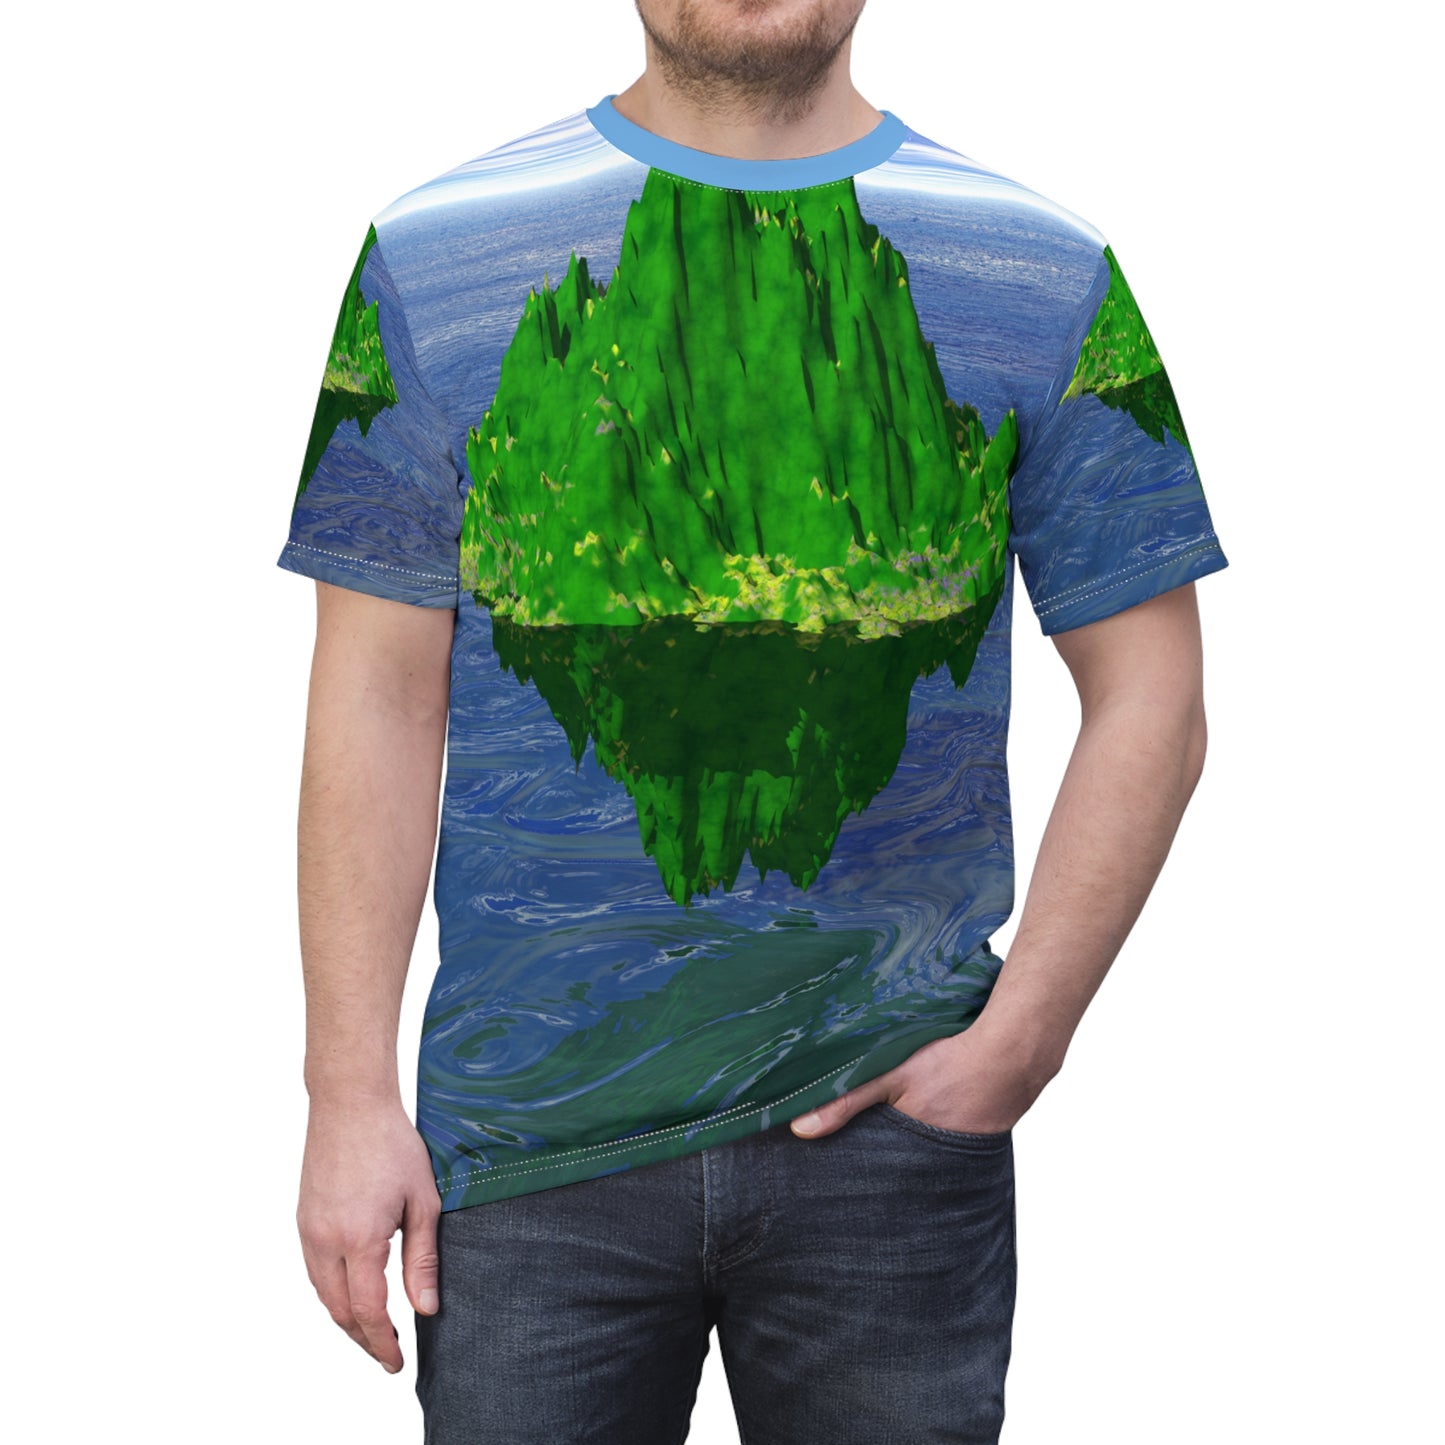 The Floating Island Unisex T-Shirt